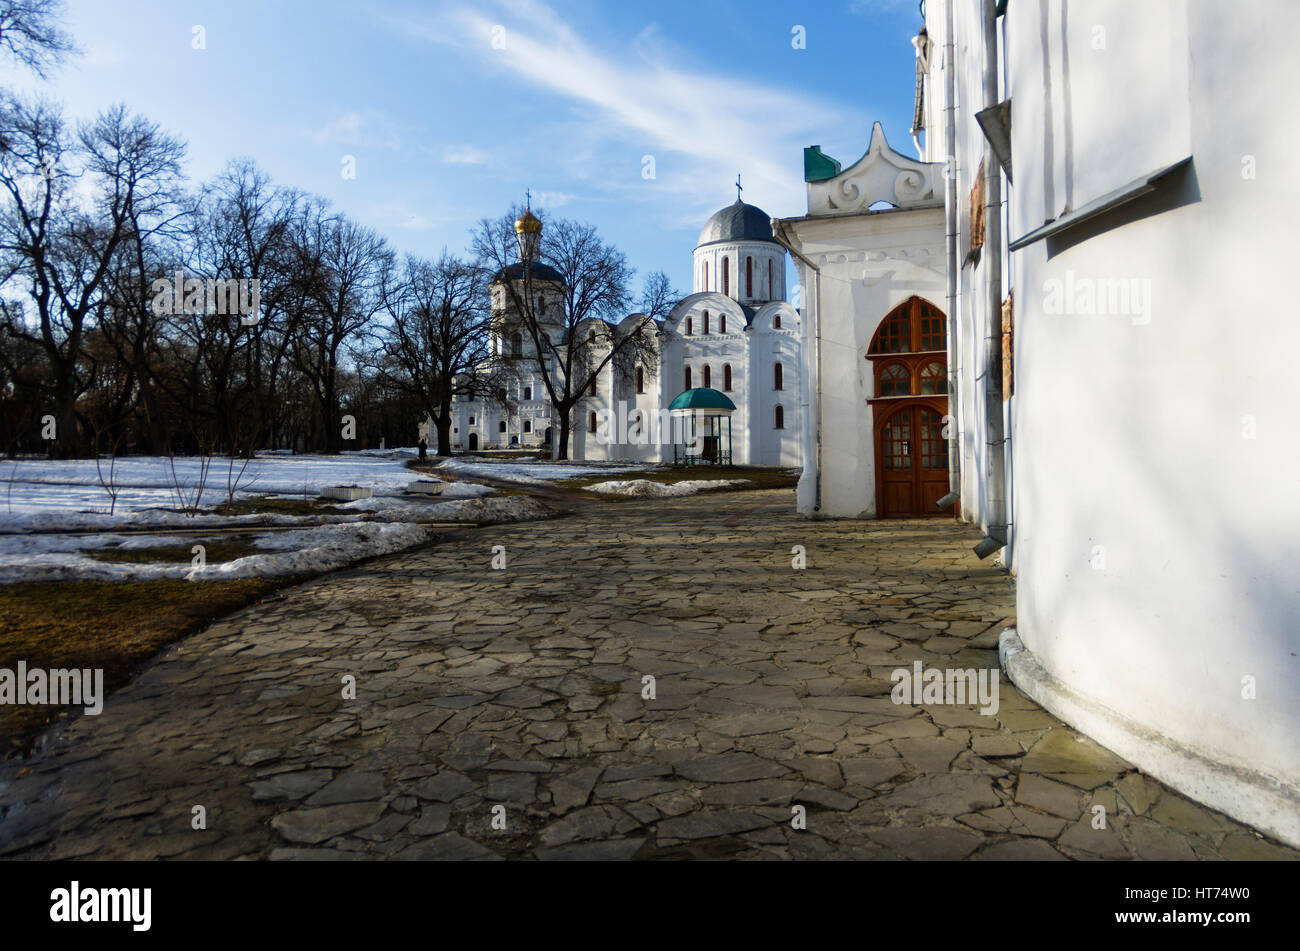 La trasfigurazione della Cattedrale di Chernigiv nel giorno di primavera, cielo nuvoloso photo shoot con obiettivo fisheye, Marzo, Ucraina Foto Stock